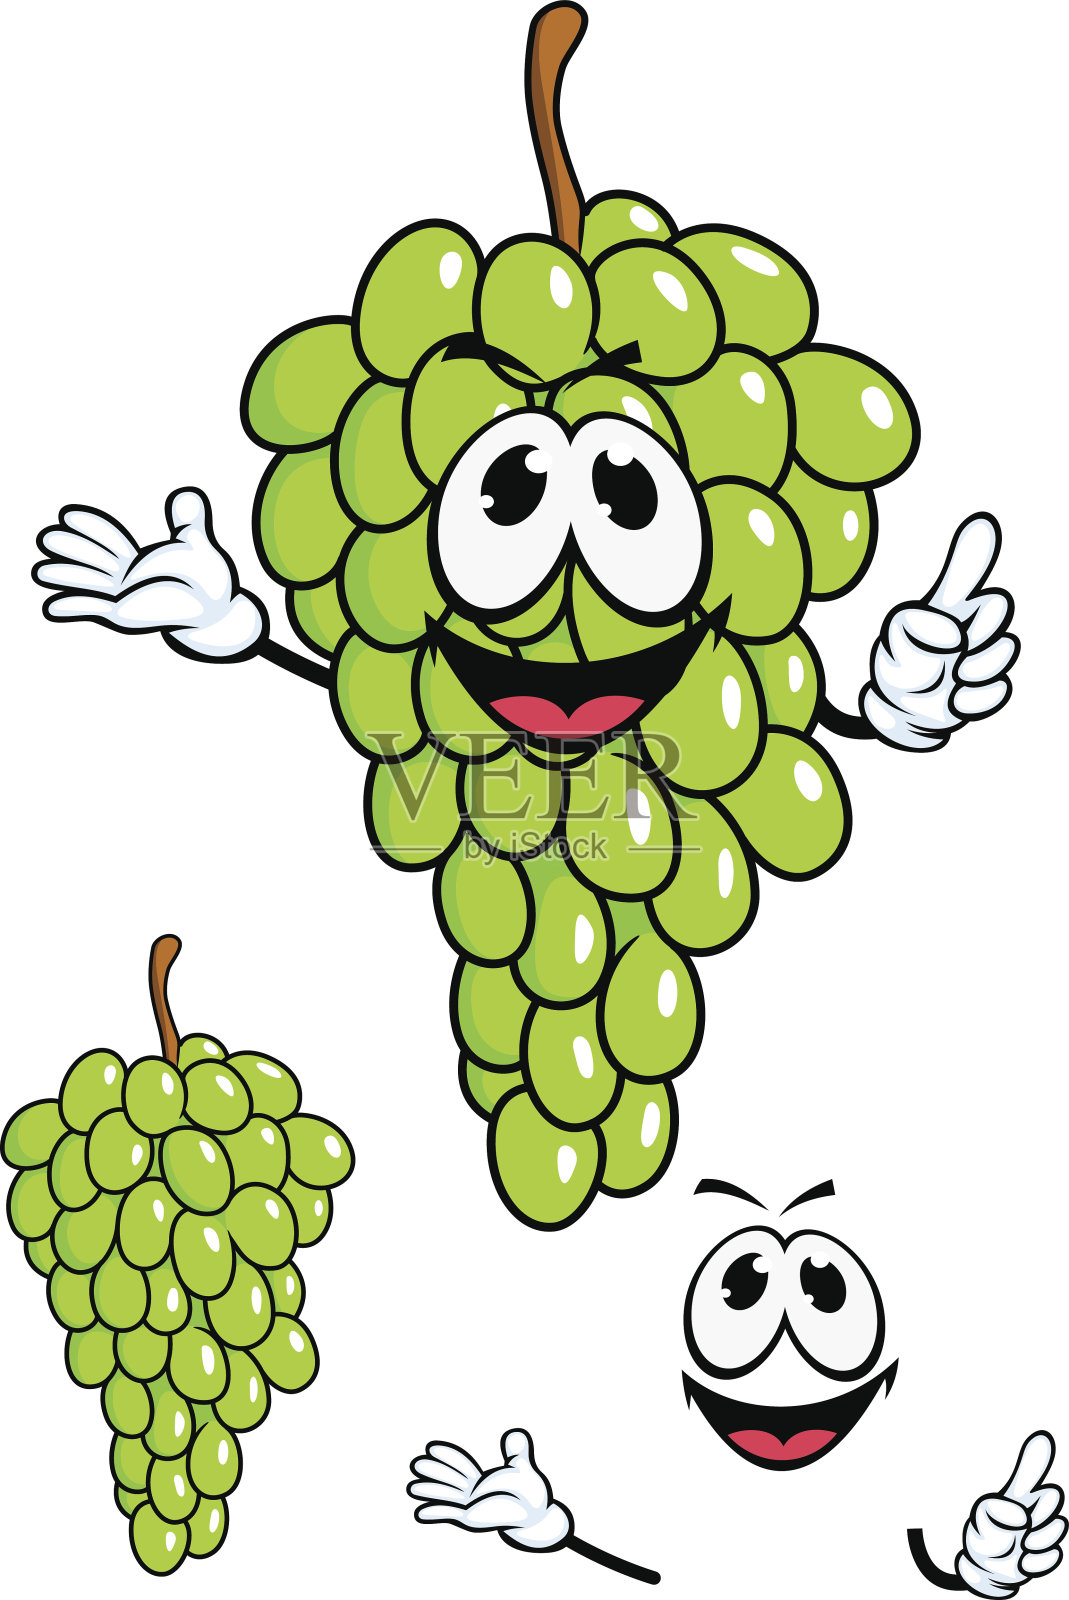 多汁的绿色葡萄水果卡通风格设计元素图片